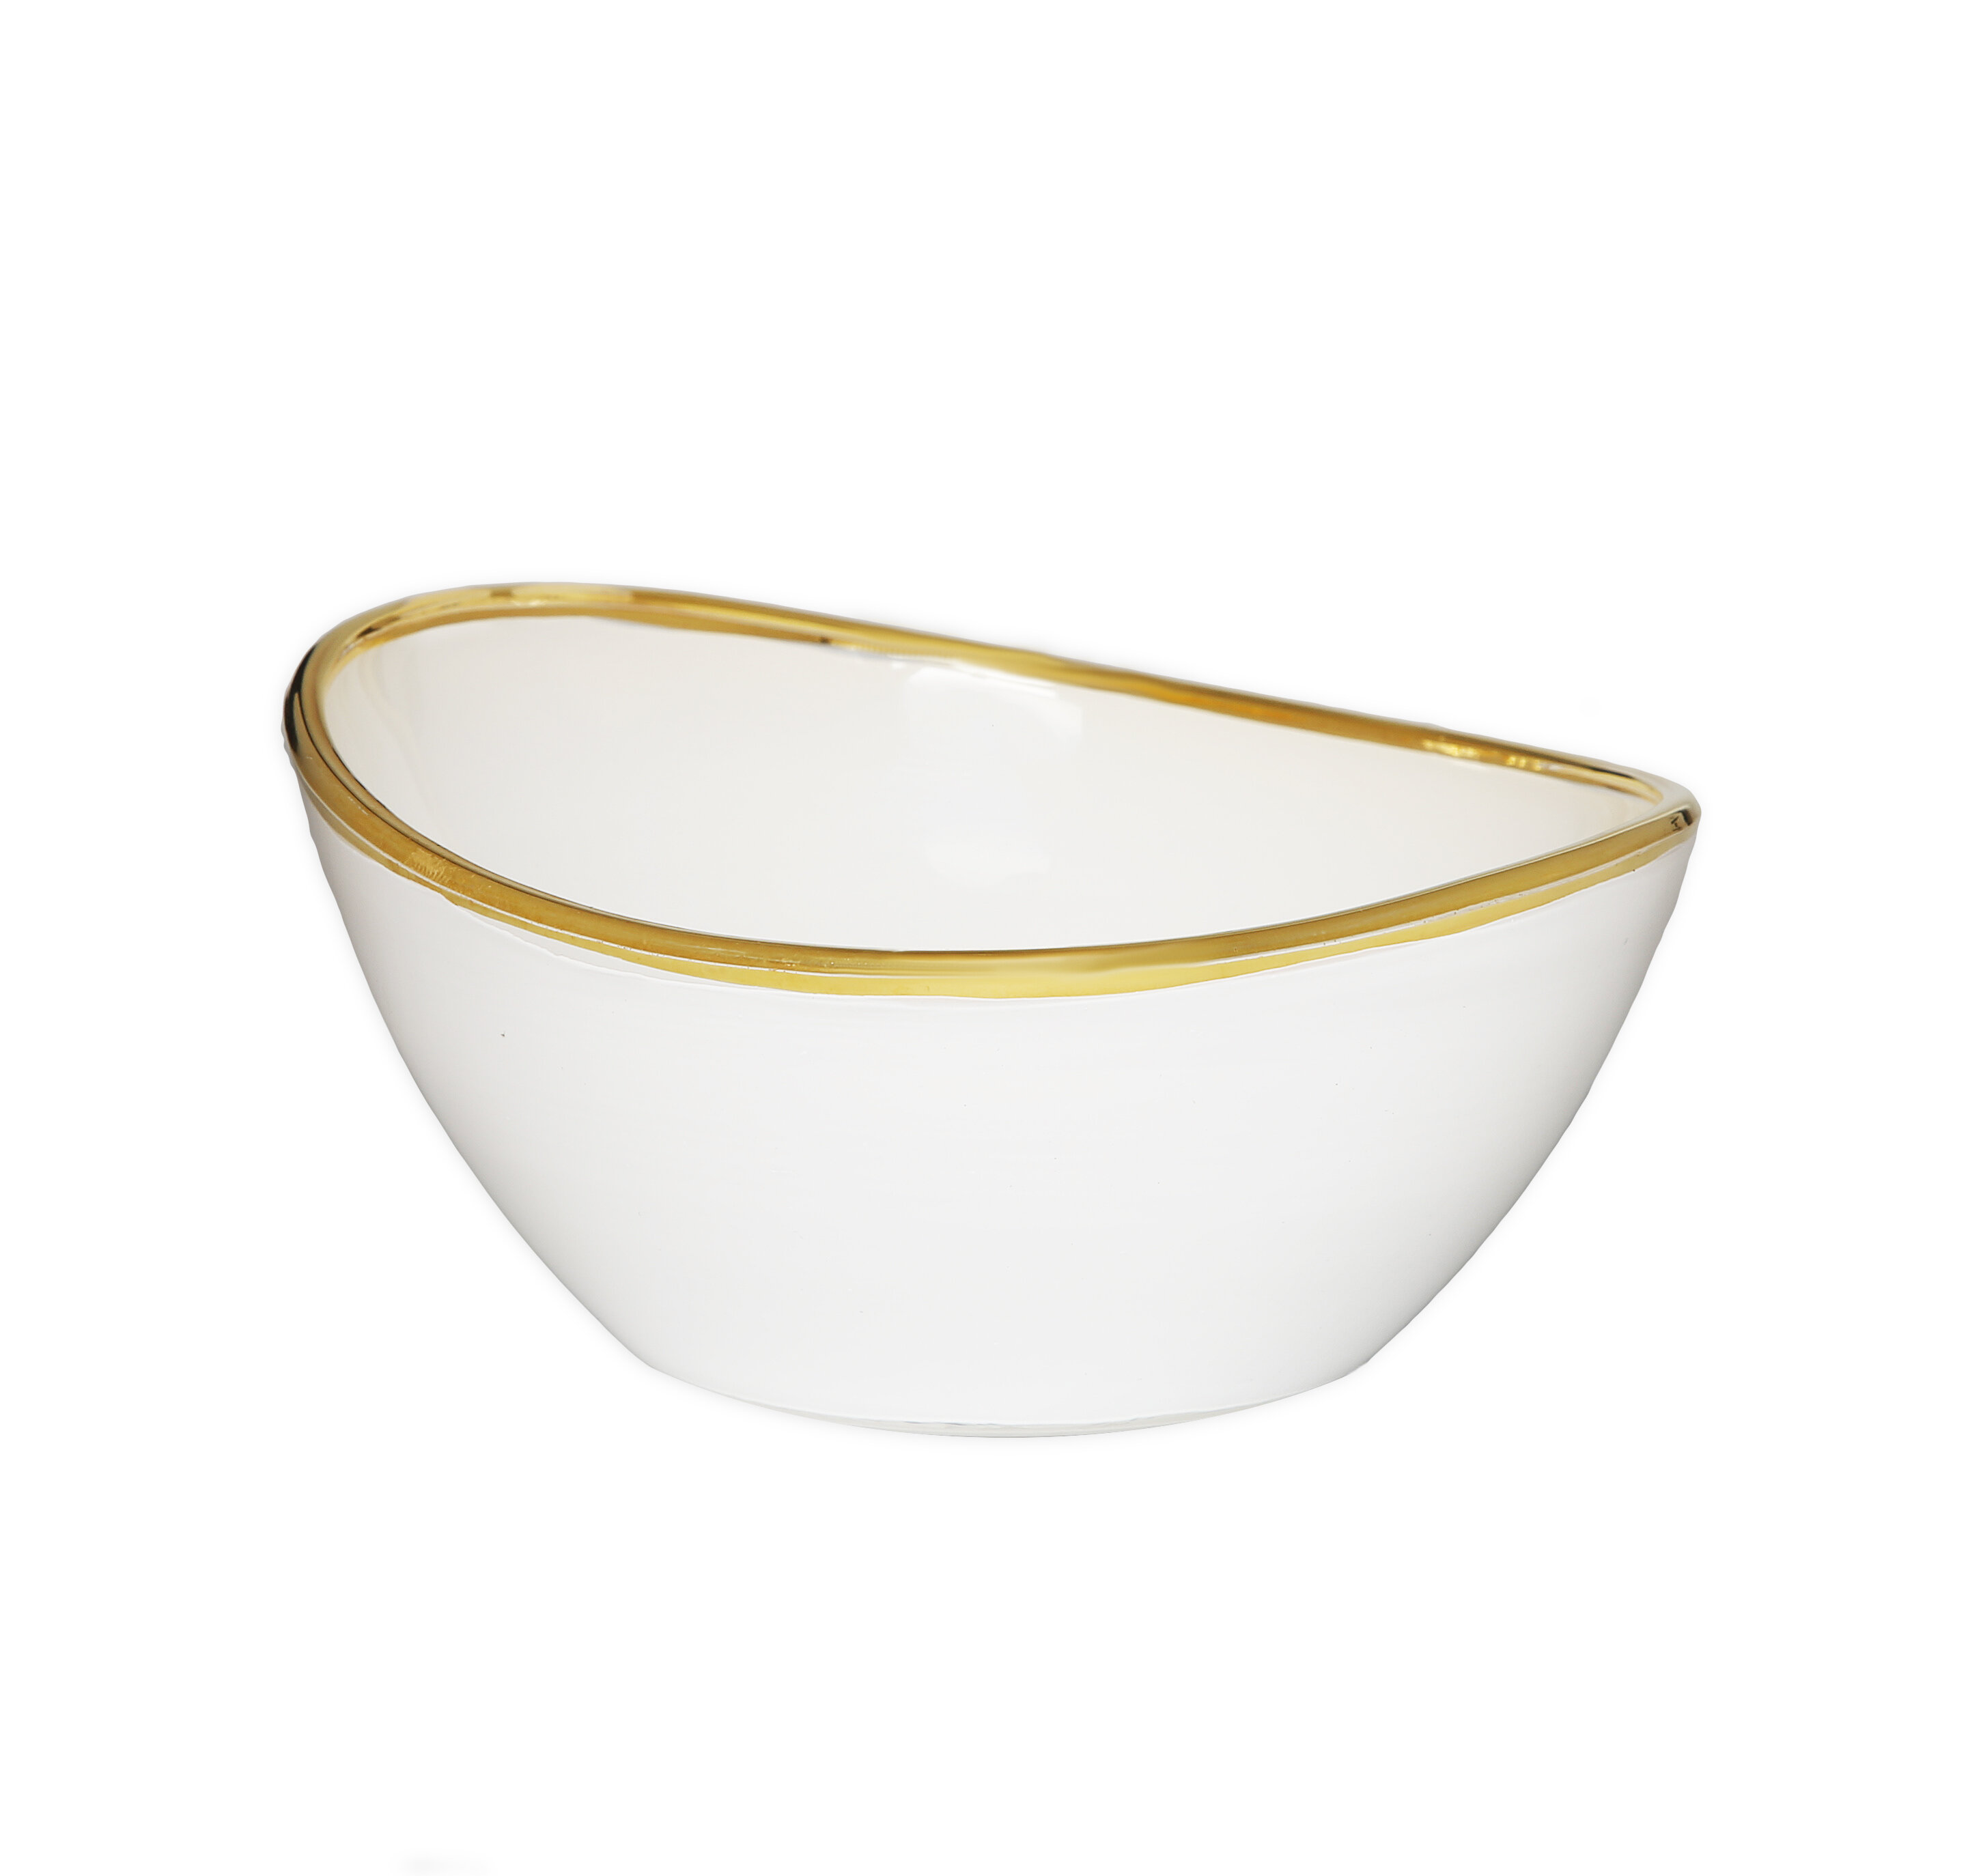 https://assets.wfcdn.com/im/70143374/compr-r85/1674/167413574/everly-quinn-glass-salad-bowl.jpg